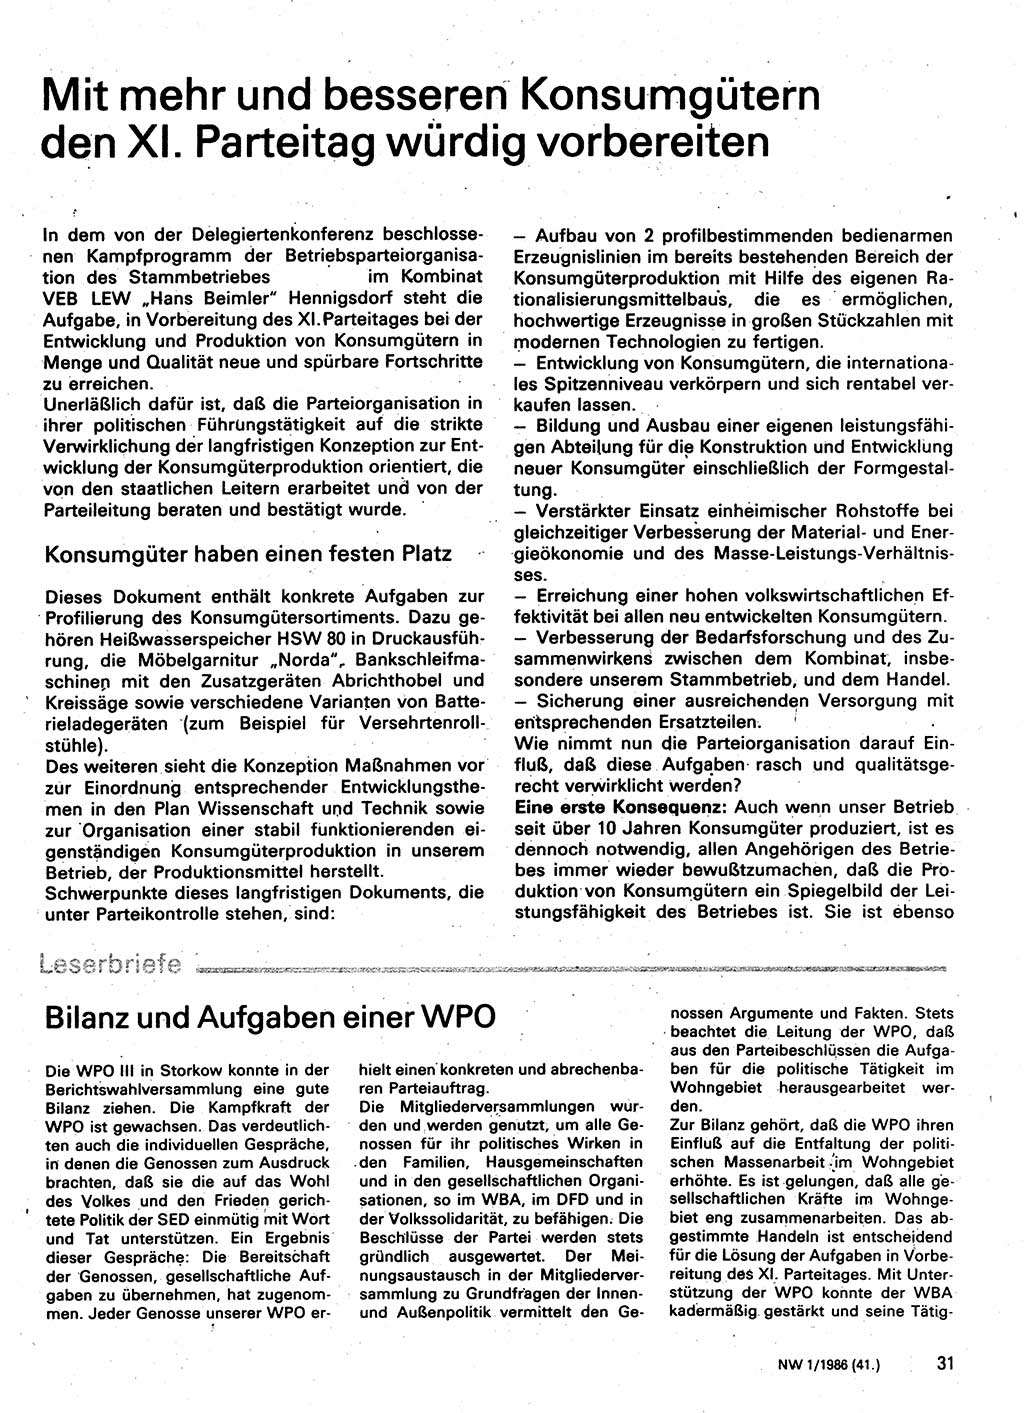 Neuer Weg (NW), Organ des Zentralkomitees (ZK) der SED (Sozialistische Einheitspartei Deutschlands) für Fragen des Parteilebens, 41. Jahrgang [Deutsche Demokratische Republik (DDR)] 1986, Seite 31 (NW ZK SED DDR 1986, S. 31)